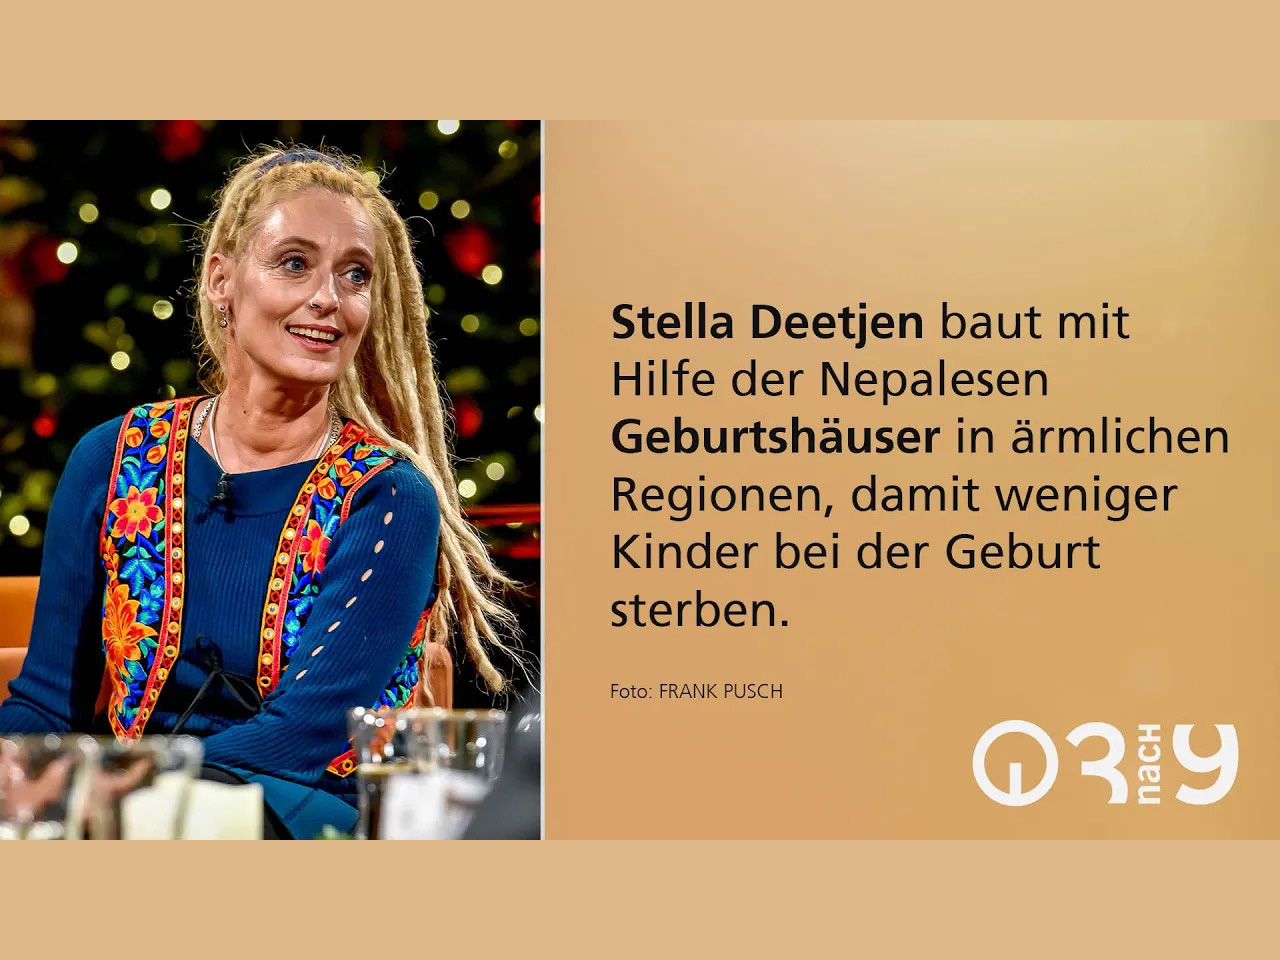 Stella Deetjen über ein Leben für 